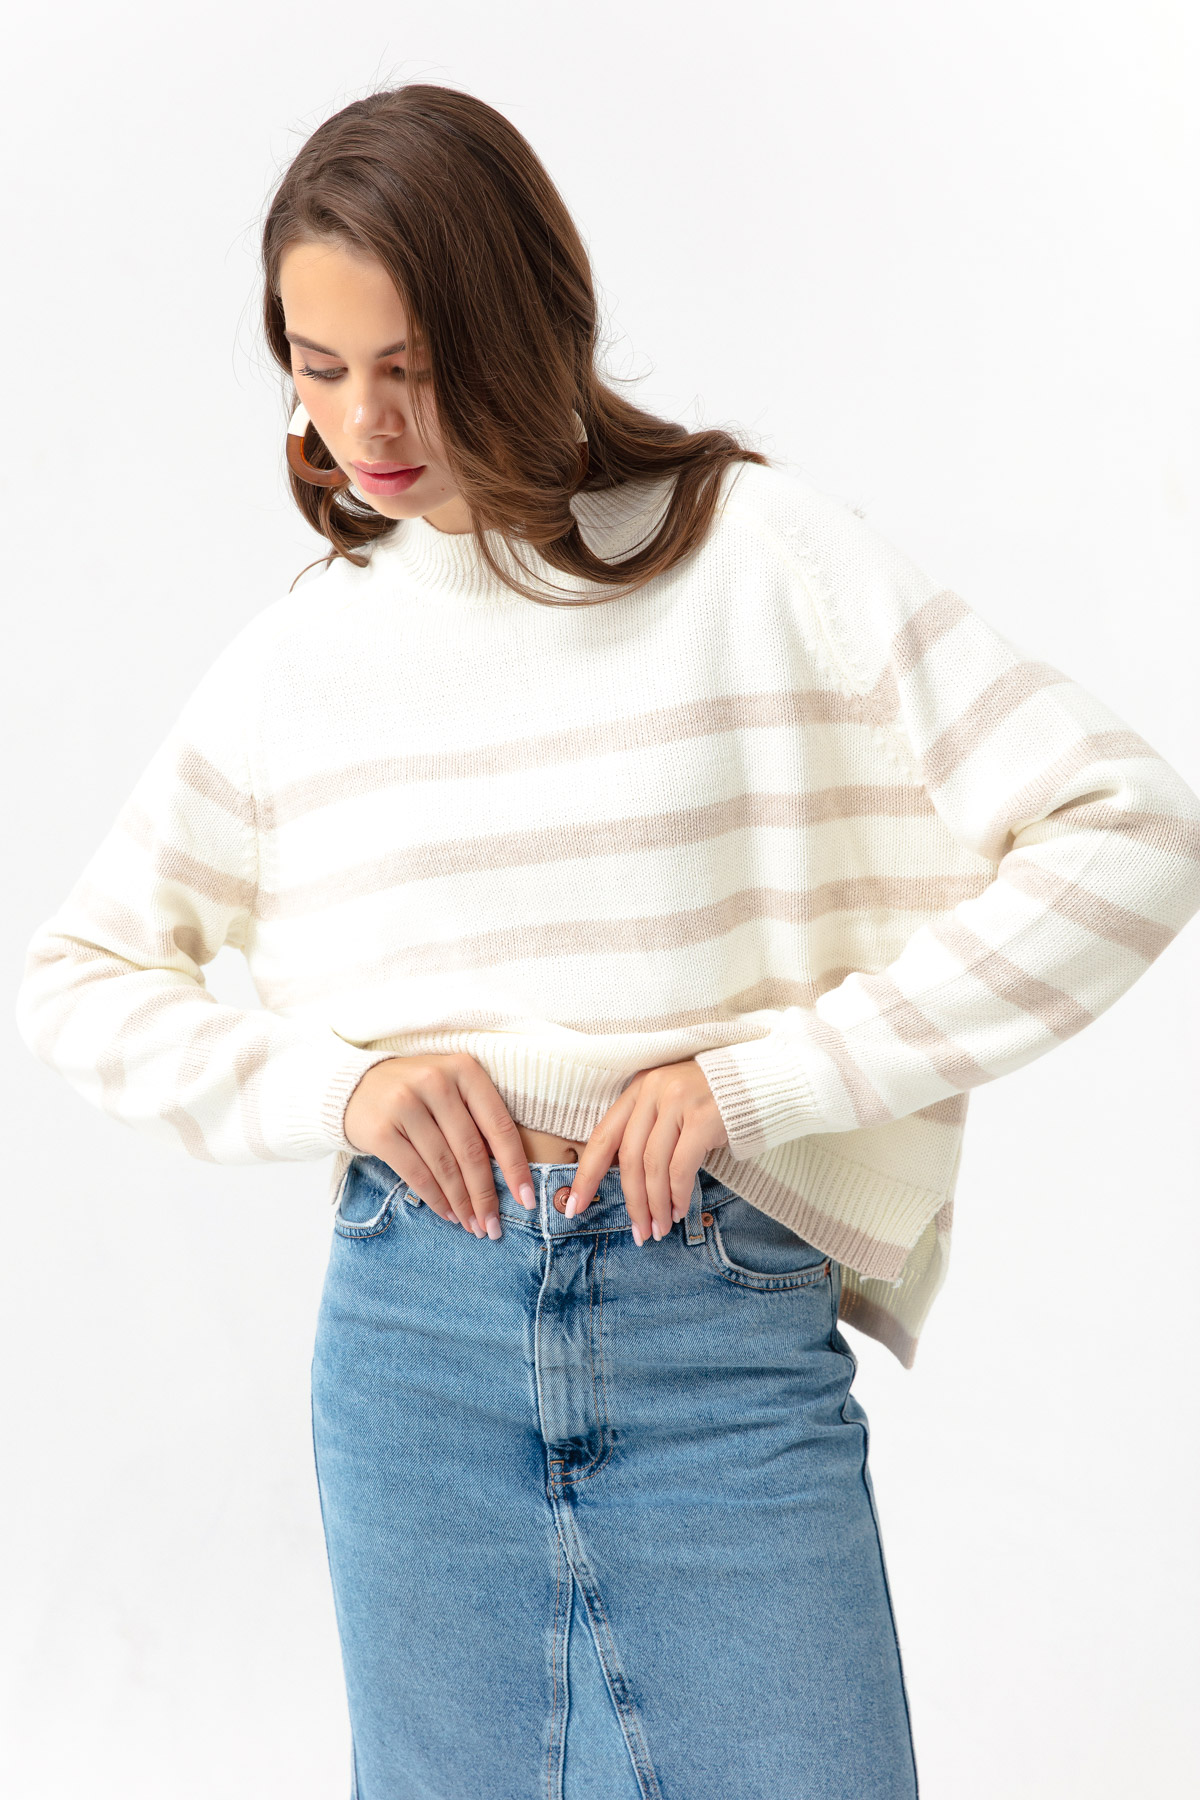 Women's Beige Striped Knitwear Sweater